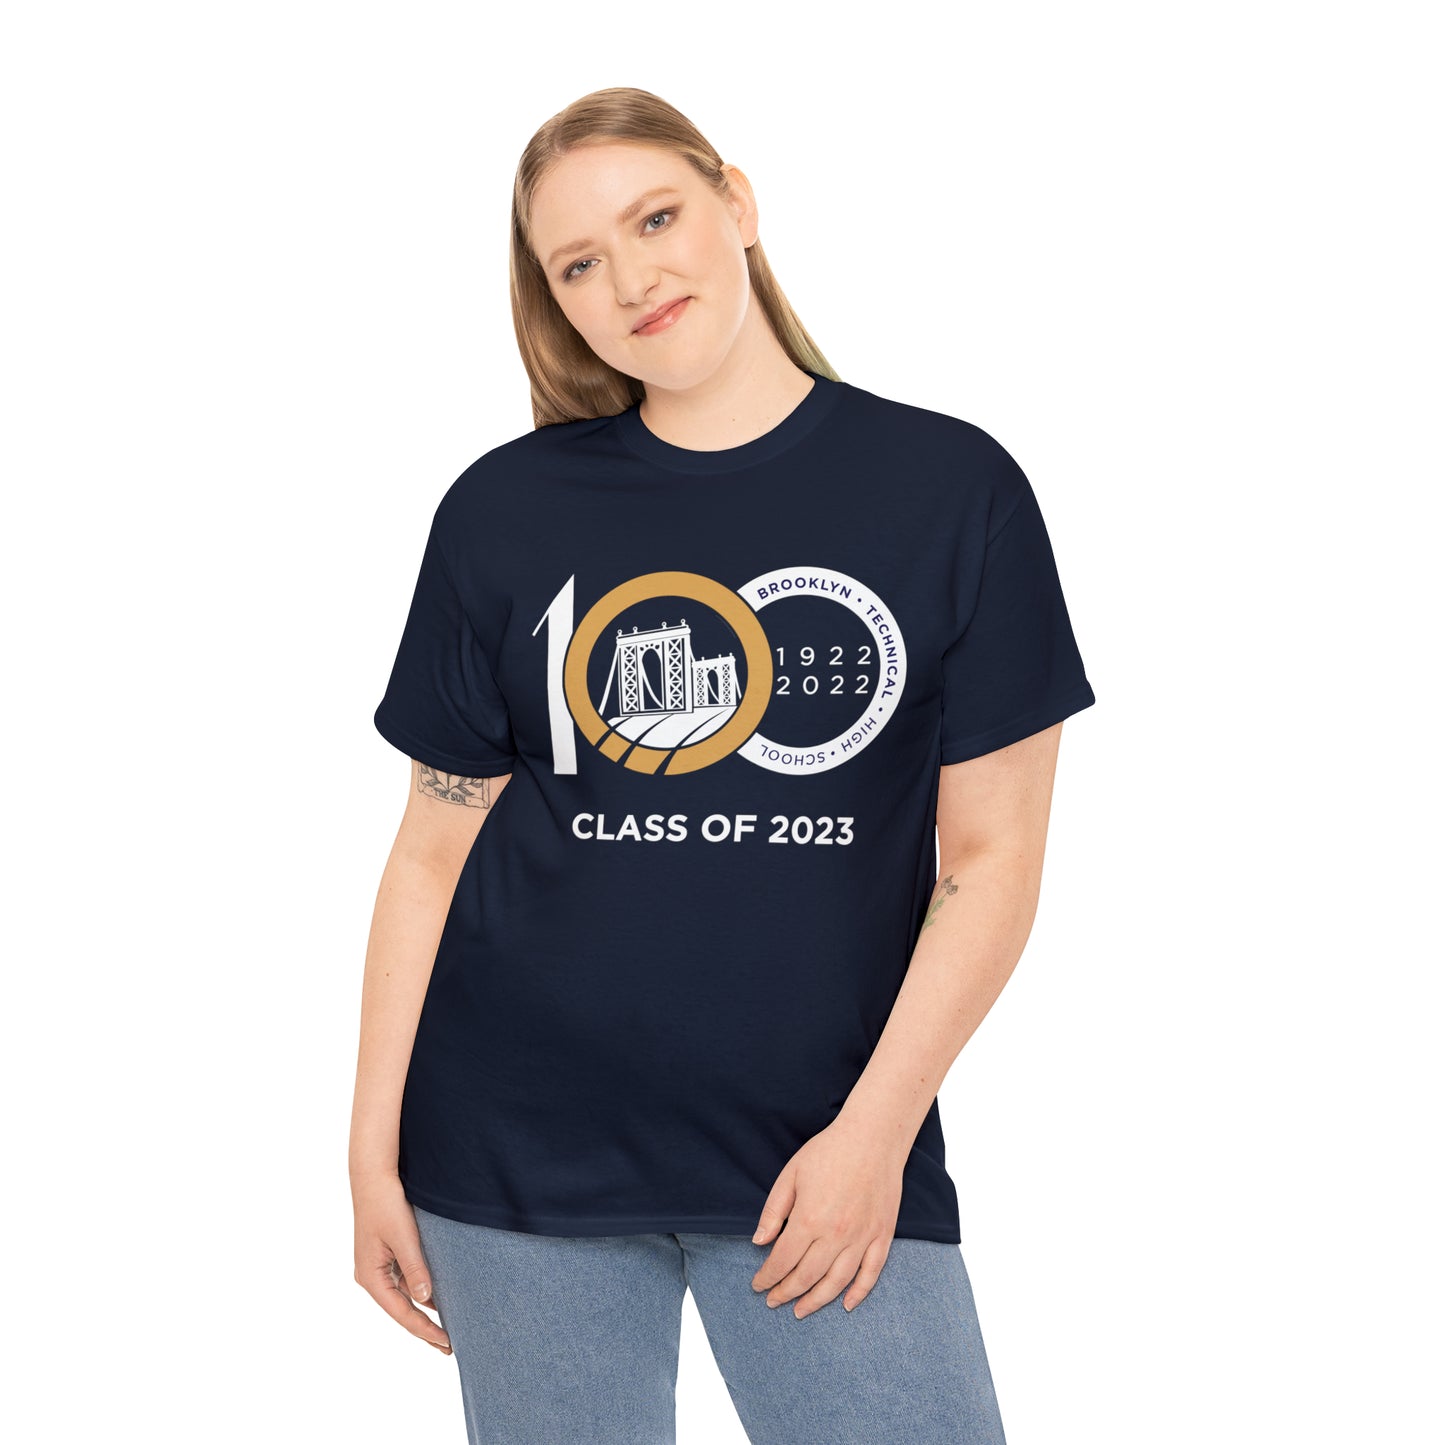 Centennial - Men's Heavy Cotton T-Shirt - Class Of 2023